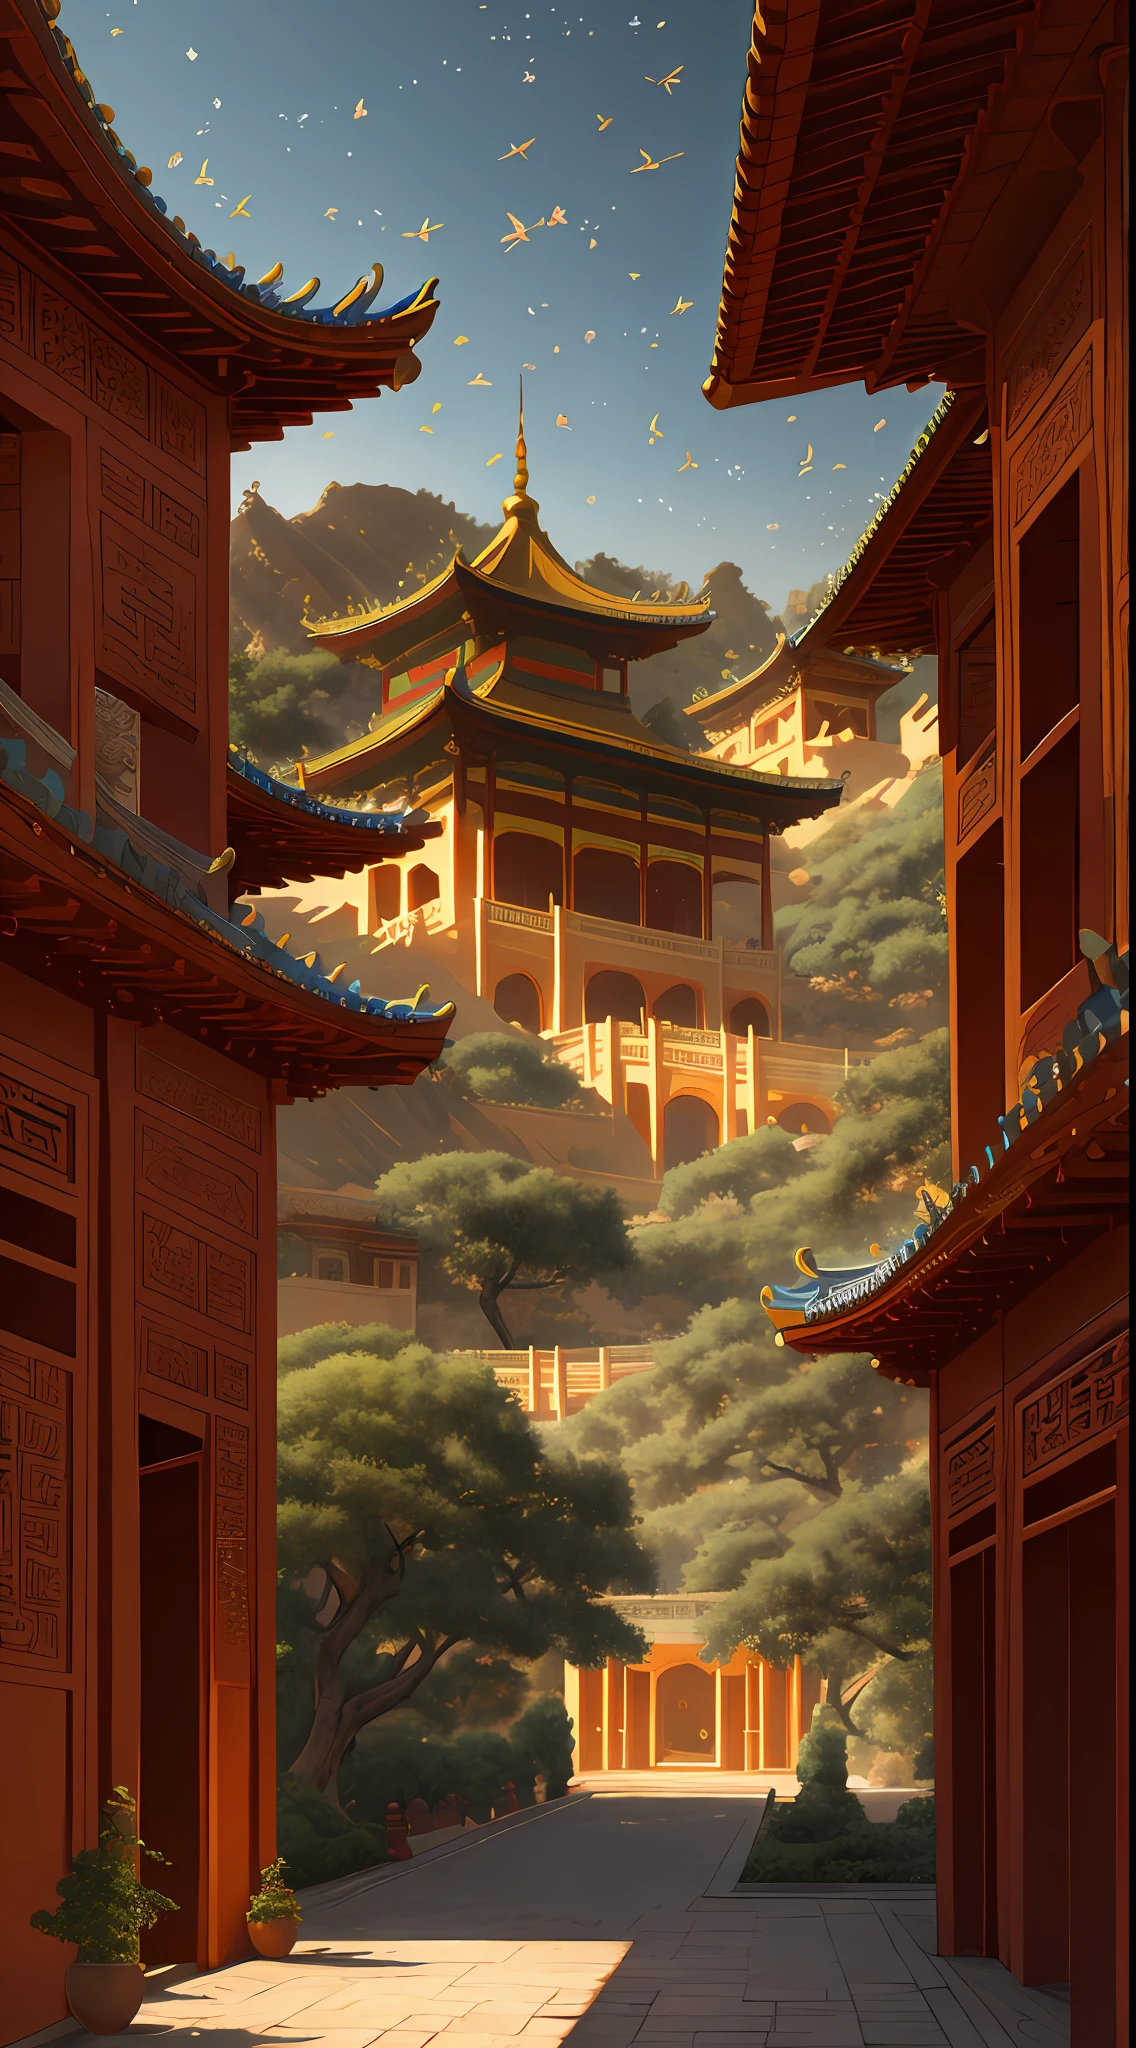 宮, 到處都是藤蔓, 巨大而潮濕的樹木, 傑作, 最好的品質, 非常細緻的CG統一8k壁紙, 油畫, 戈壁, 敦煌飛天, 輕紗飛仙, 背景散景, 景深, 高動態範圍, 現實主義, 非常精緻, 高細節, 傳統中式風格, 中國風藝術, 立體照明